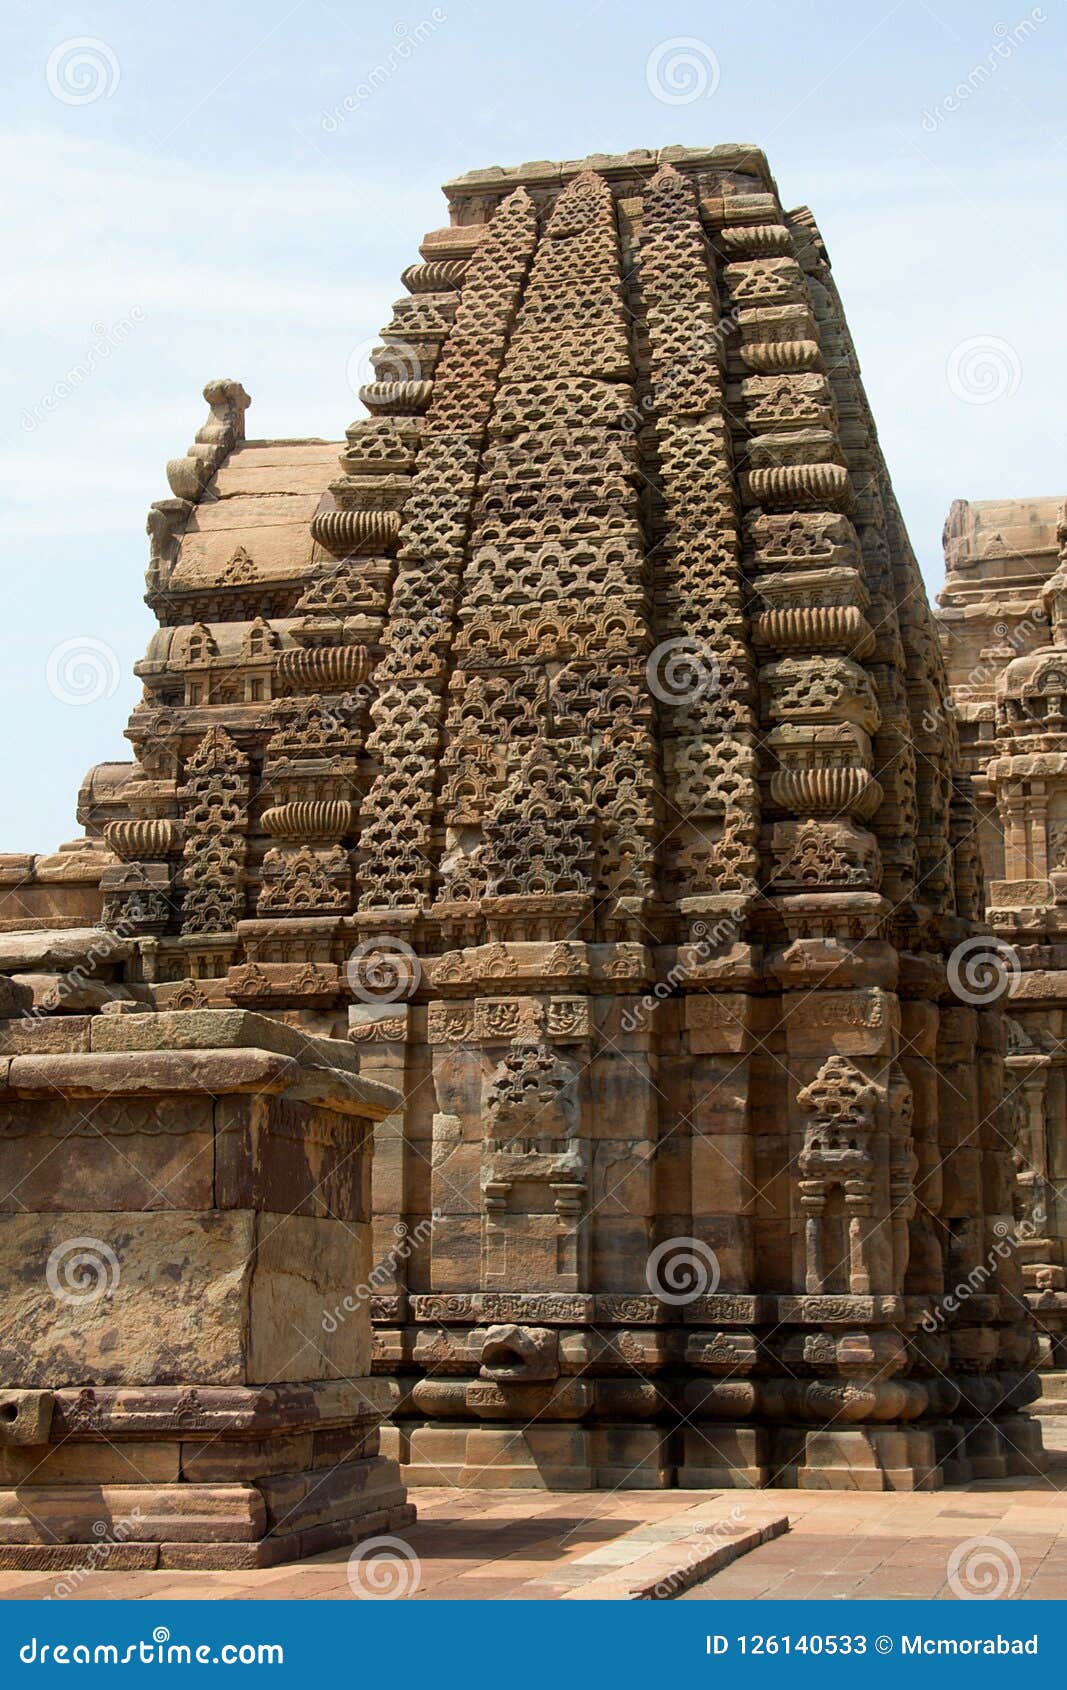 kashi vishwanatha temple, pattadakal